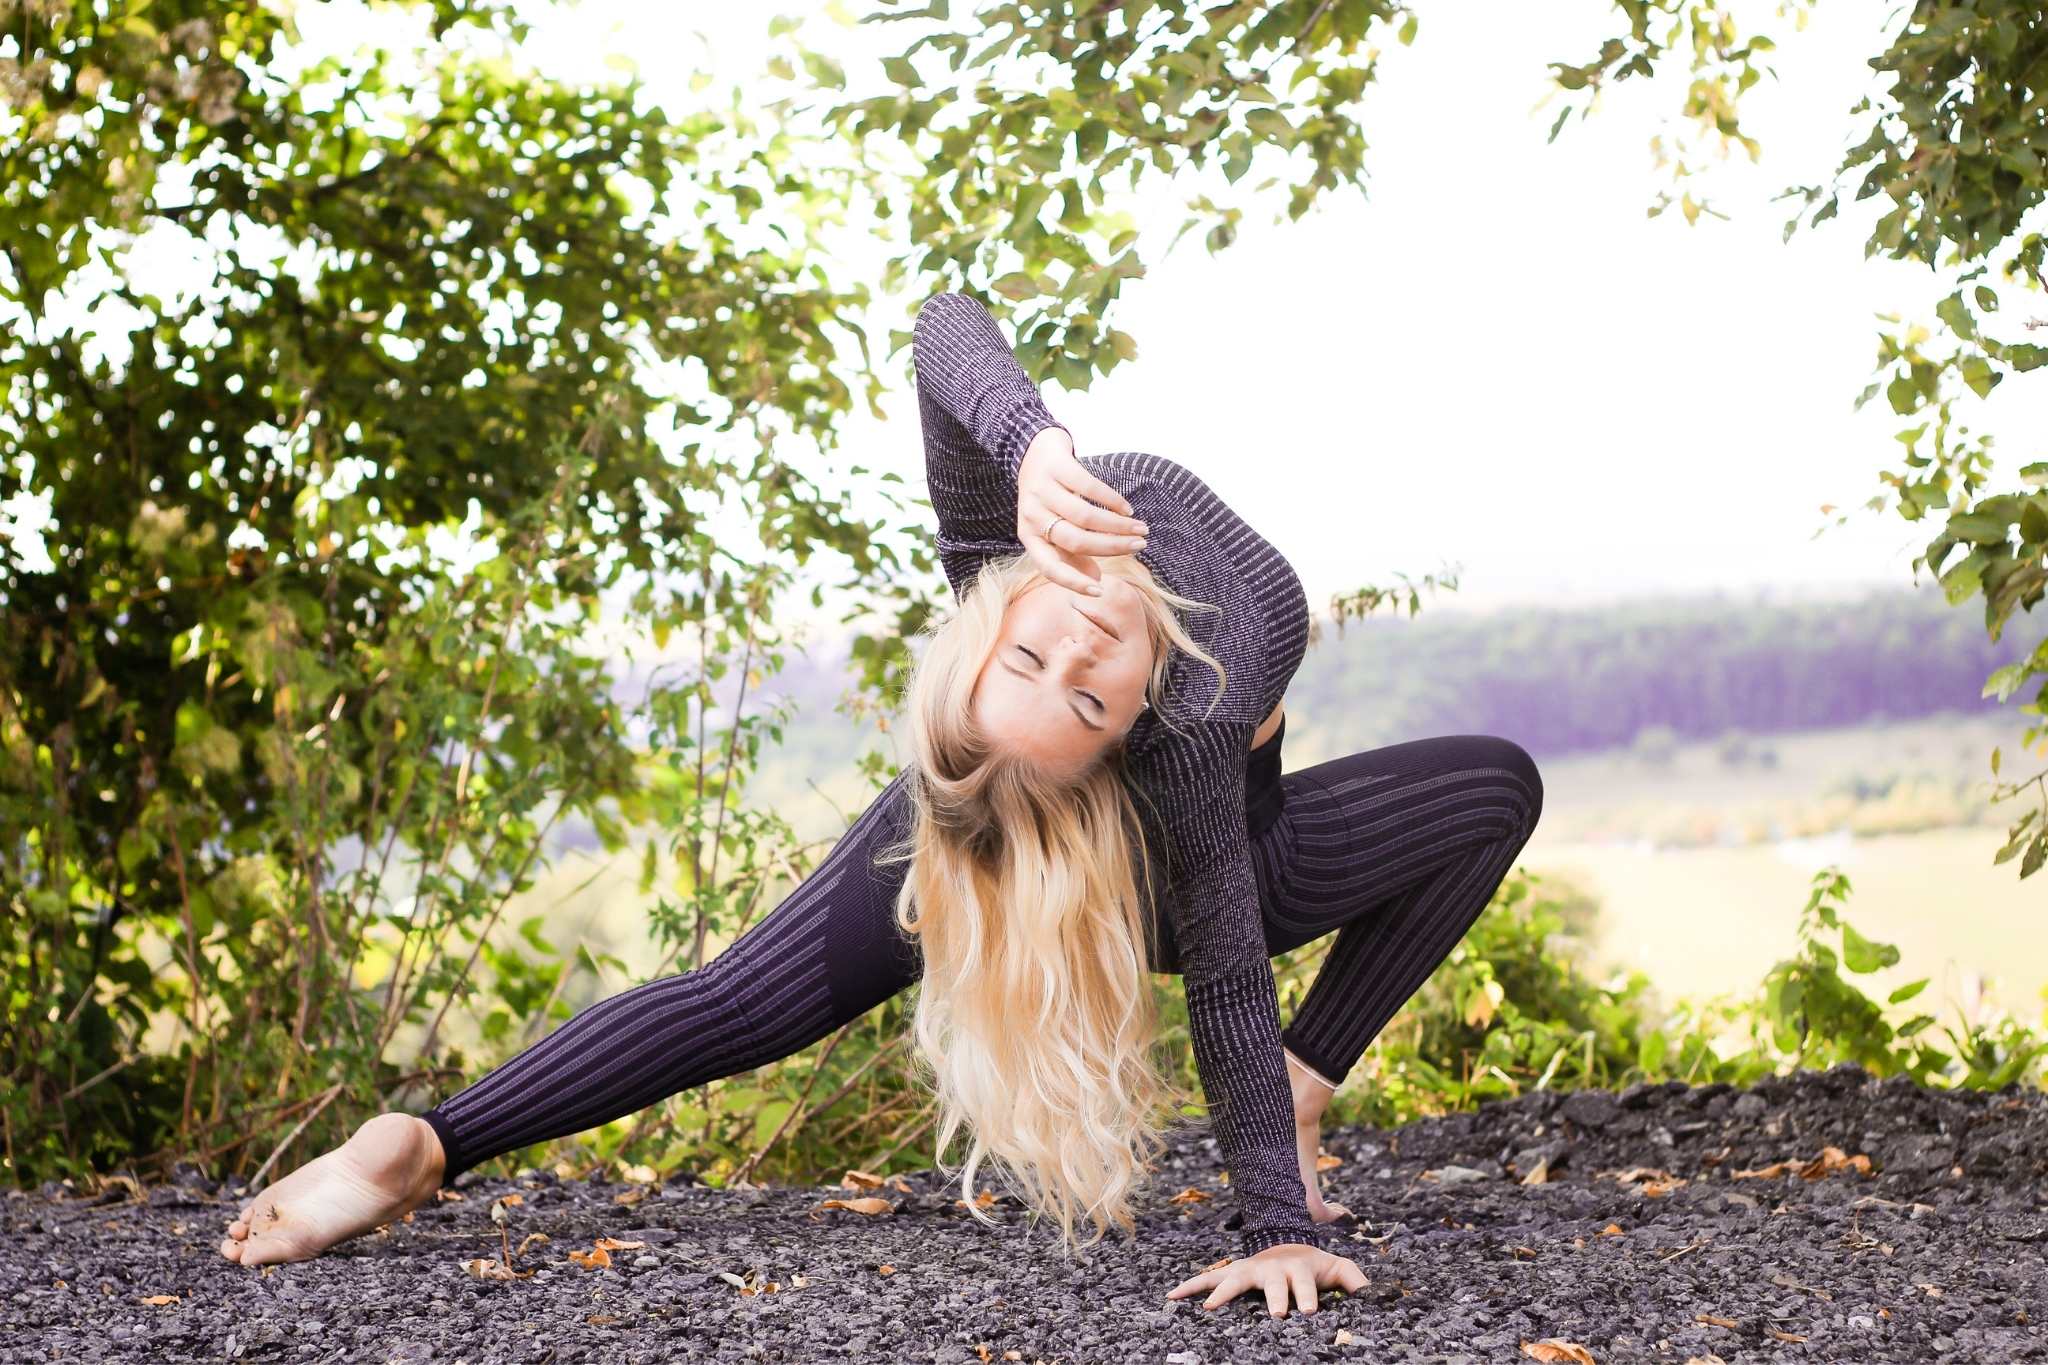 Yoga Raccoon Melissa Burgard Yoga For Beginners